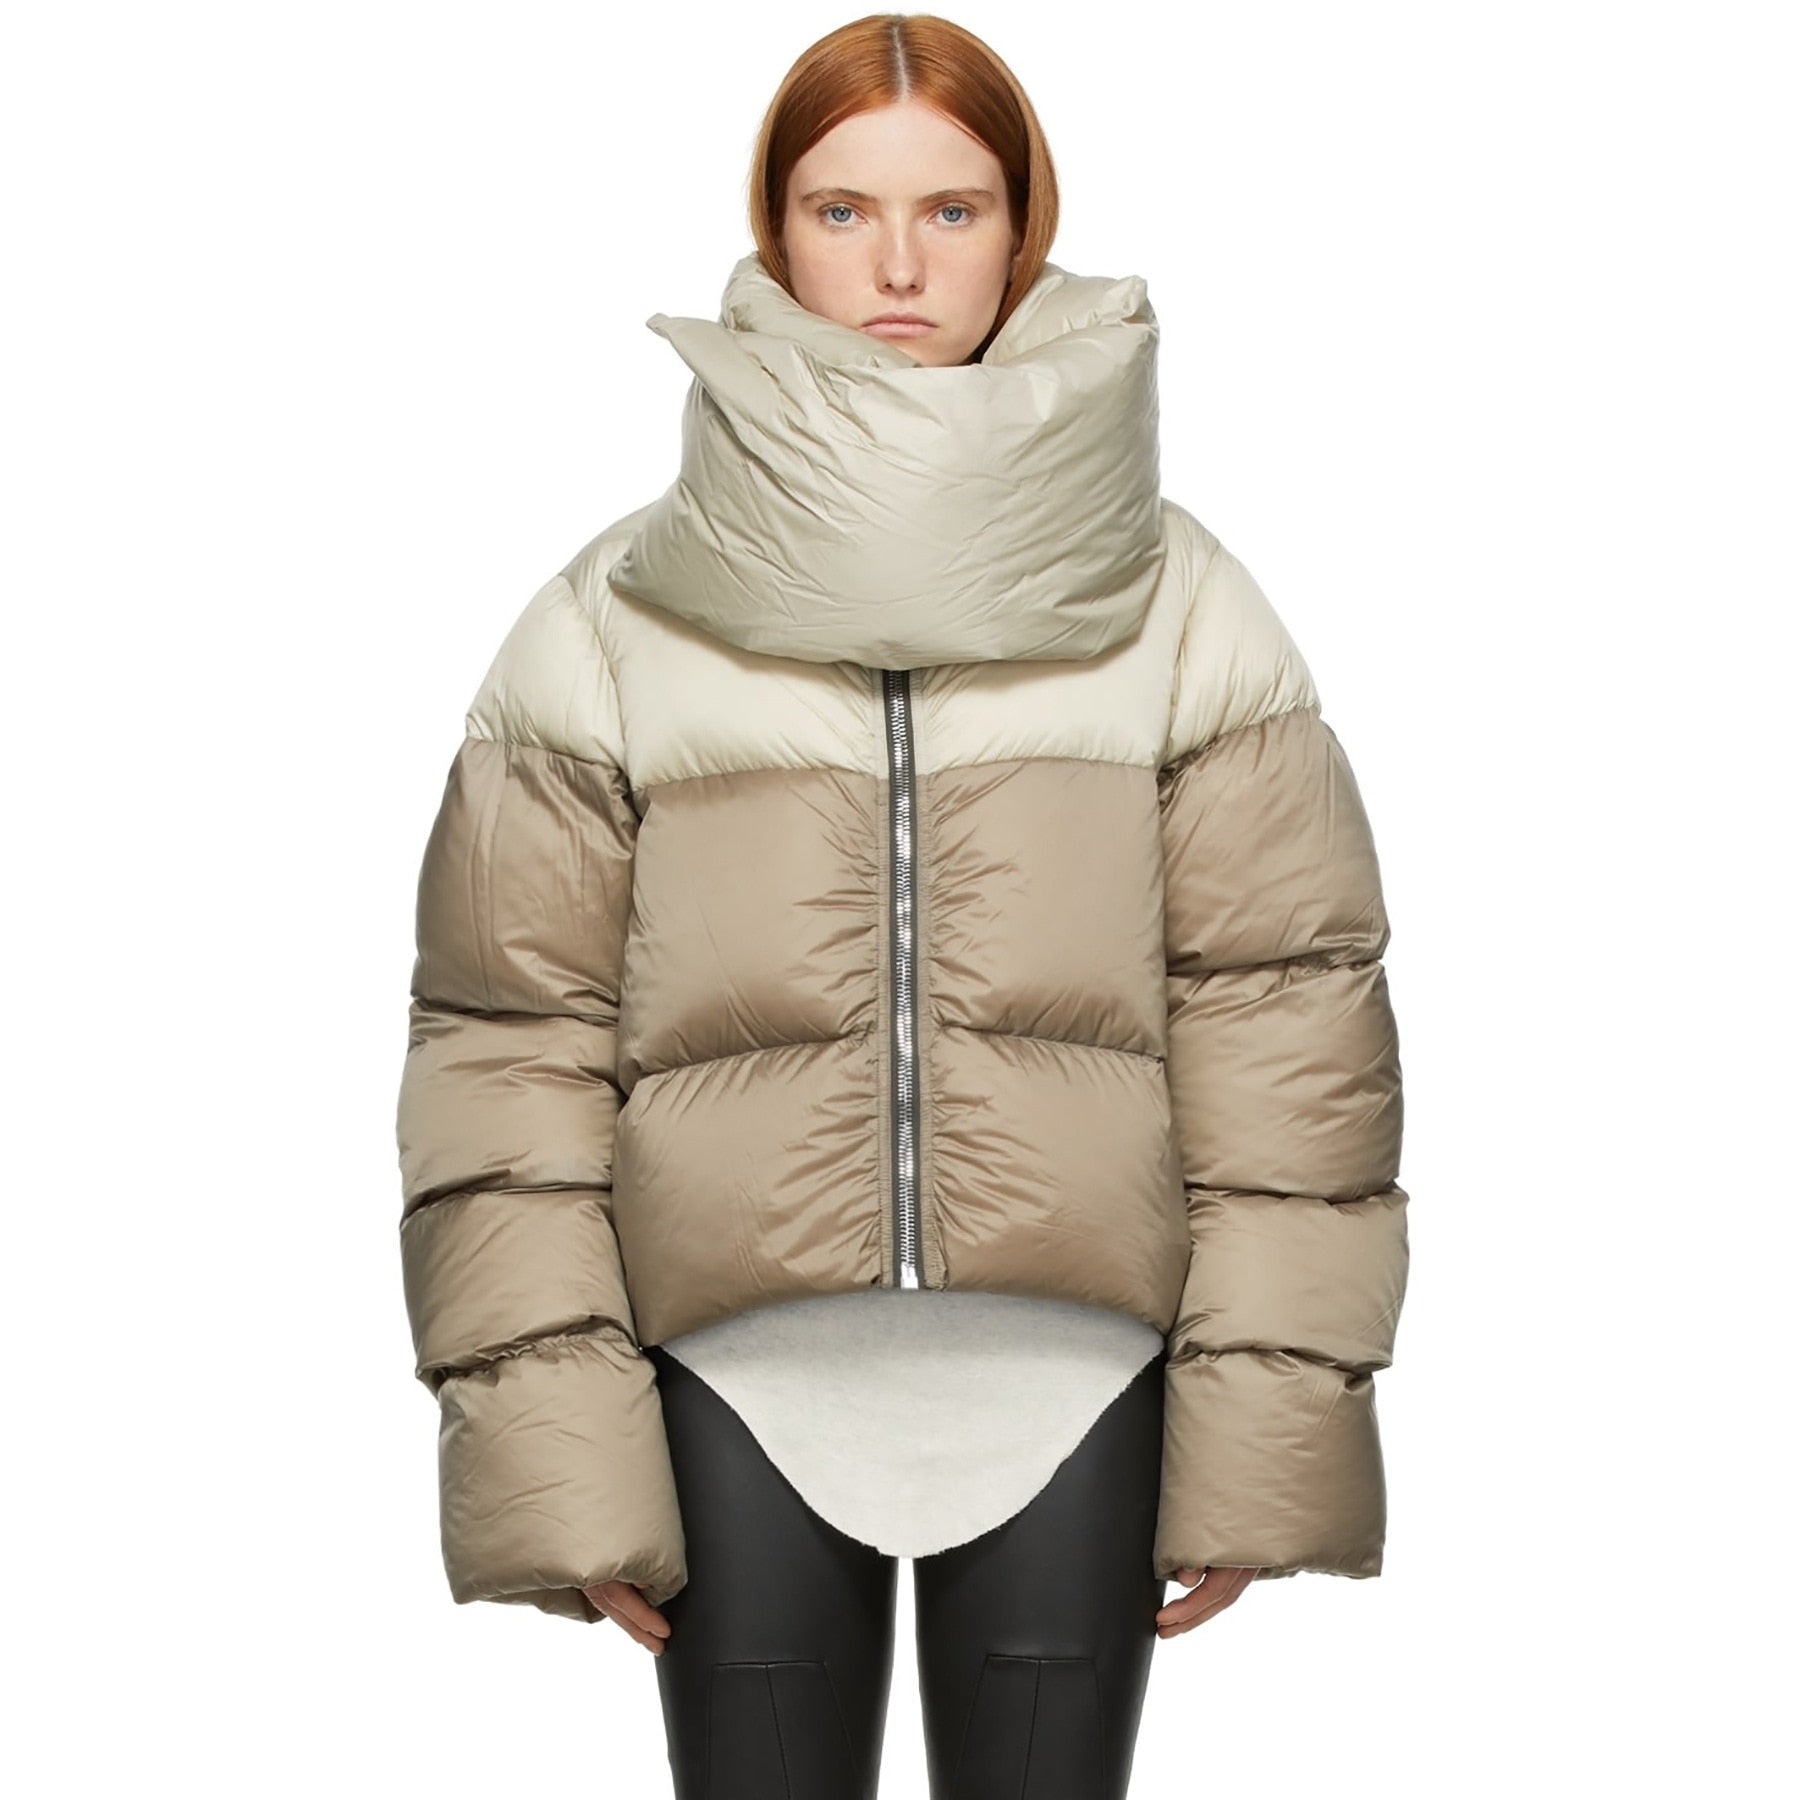 girls winter jacket sale